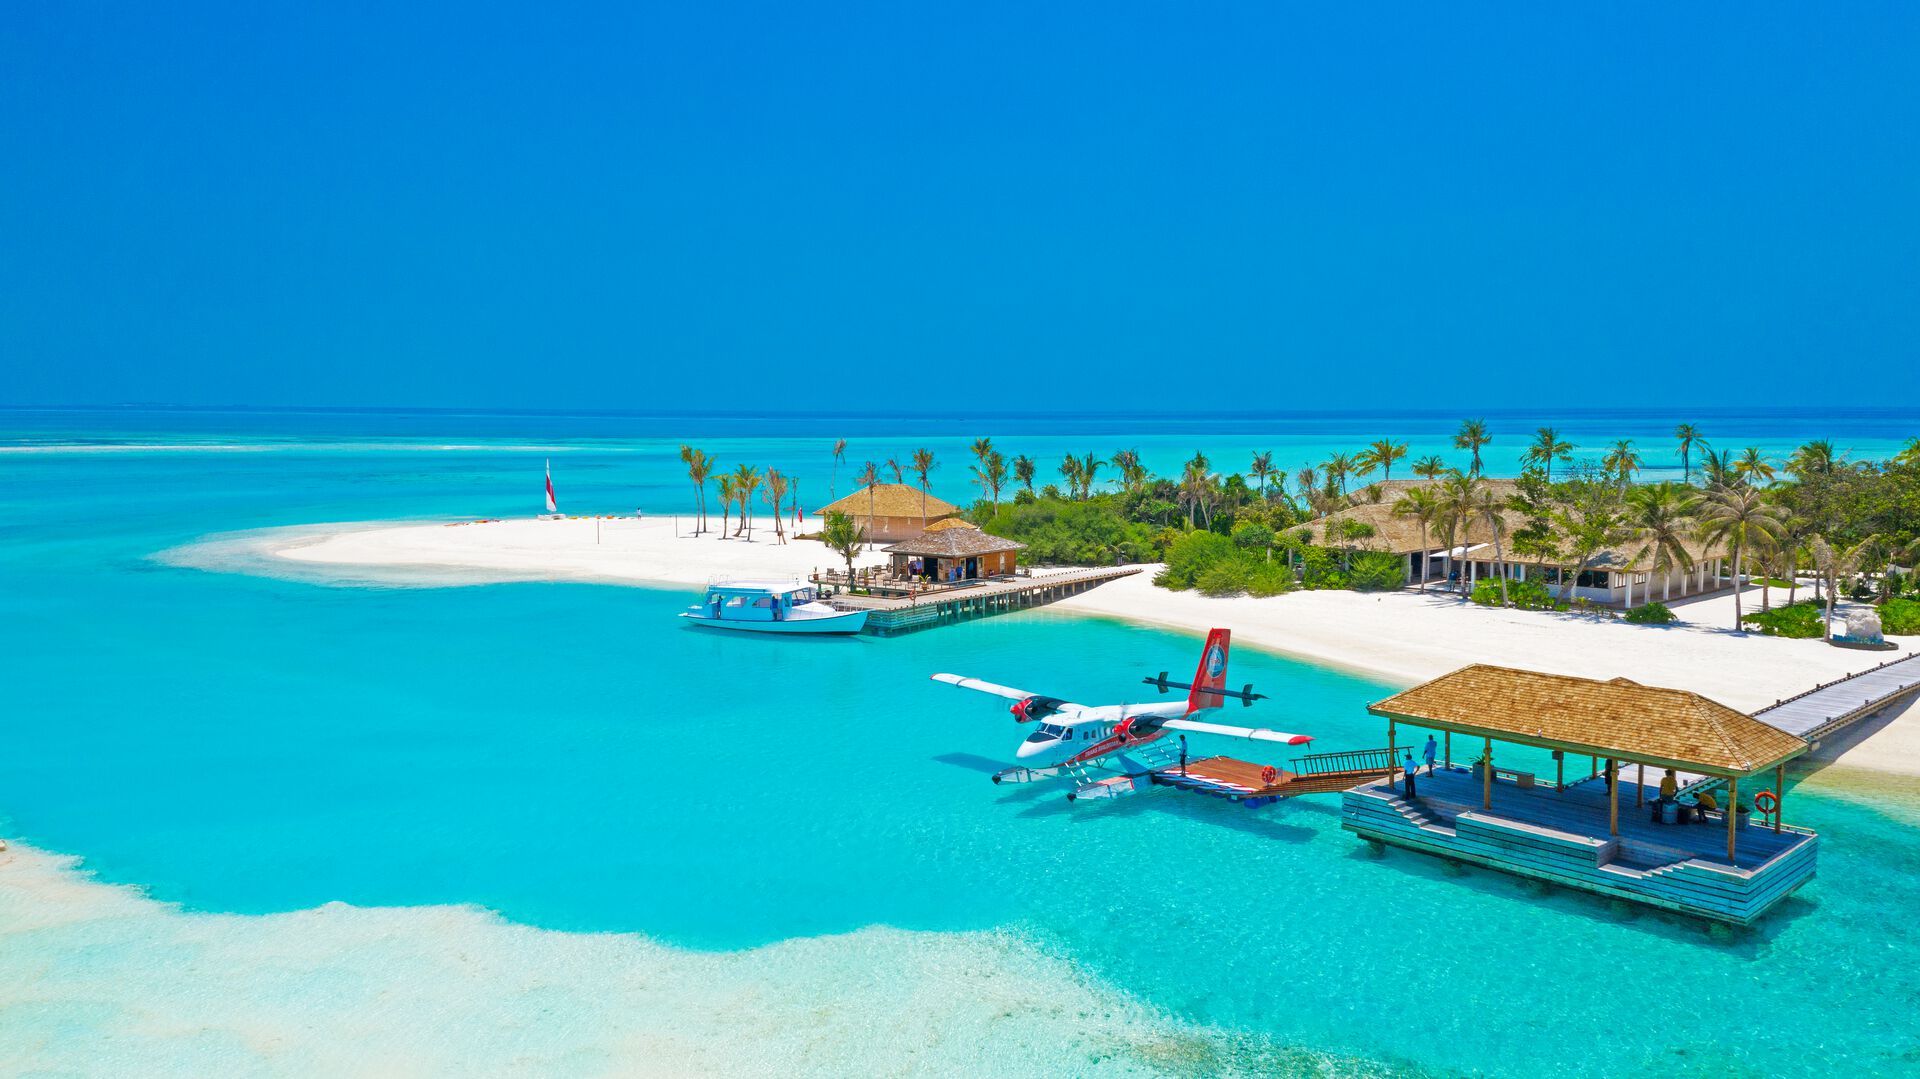 Innahura Maldives Resort - 4*